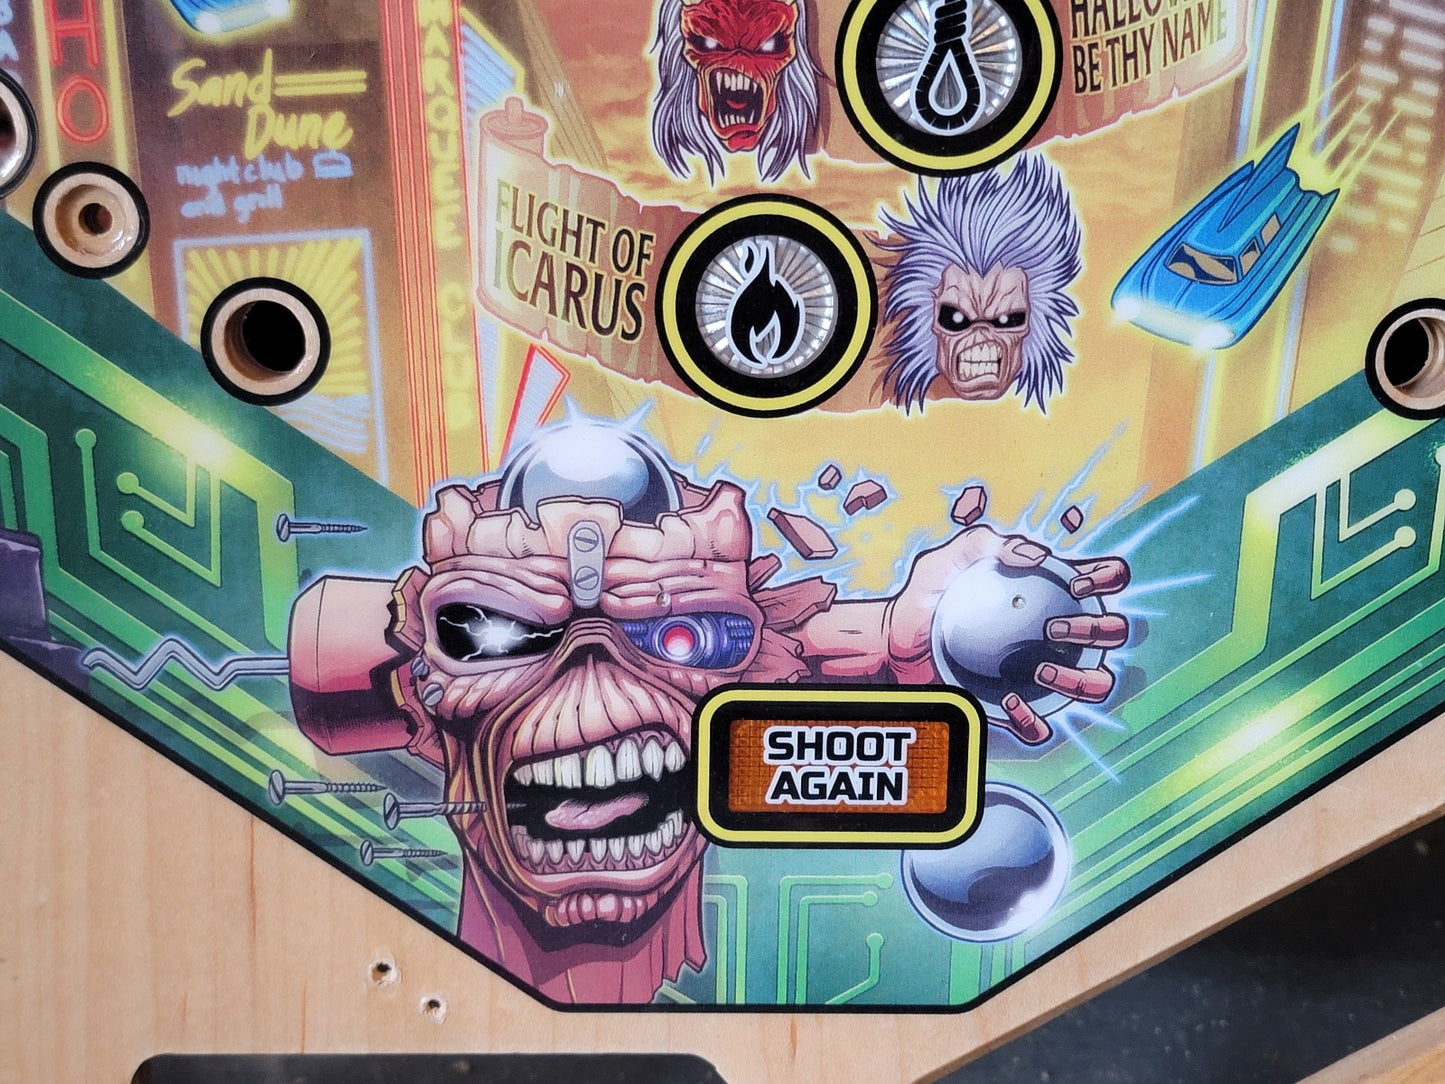 Stern Iron Maiden Pinball Machine Playfield